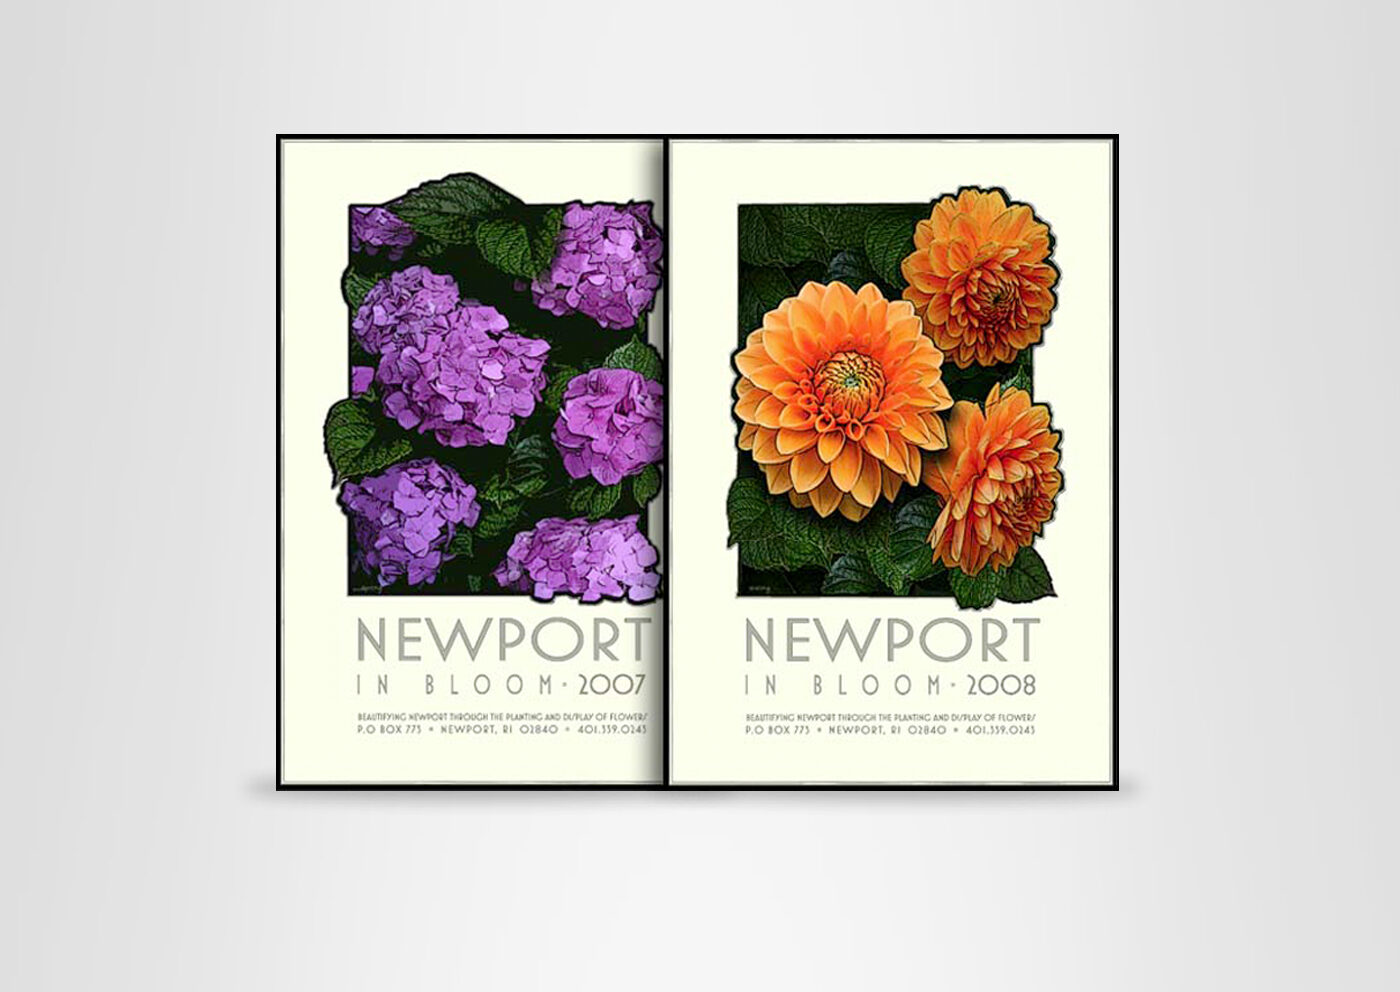 Newport in Bloom